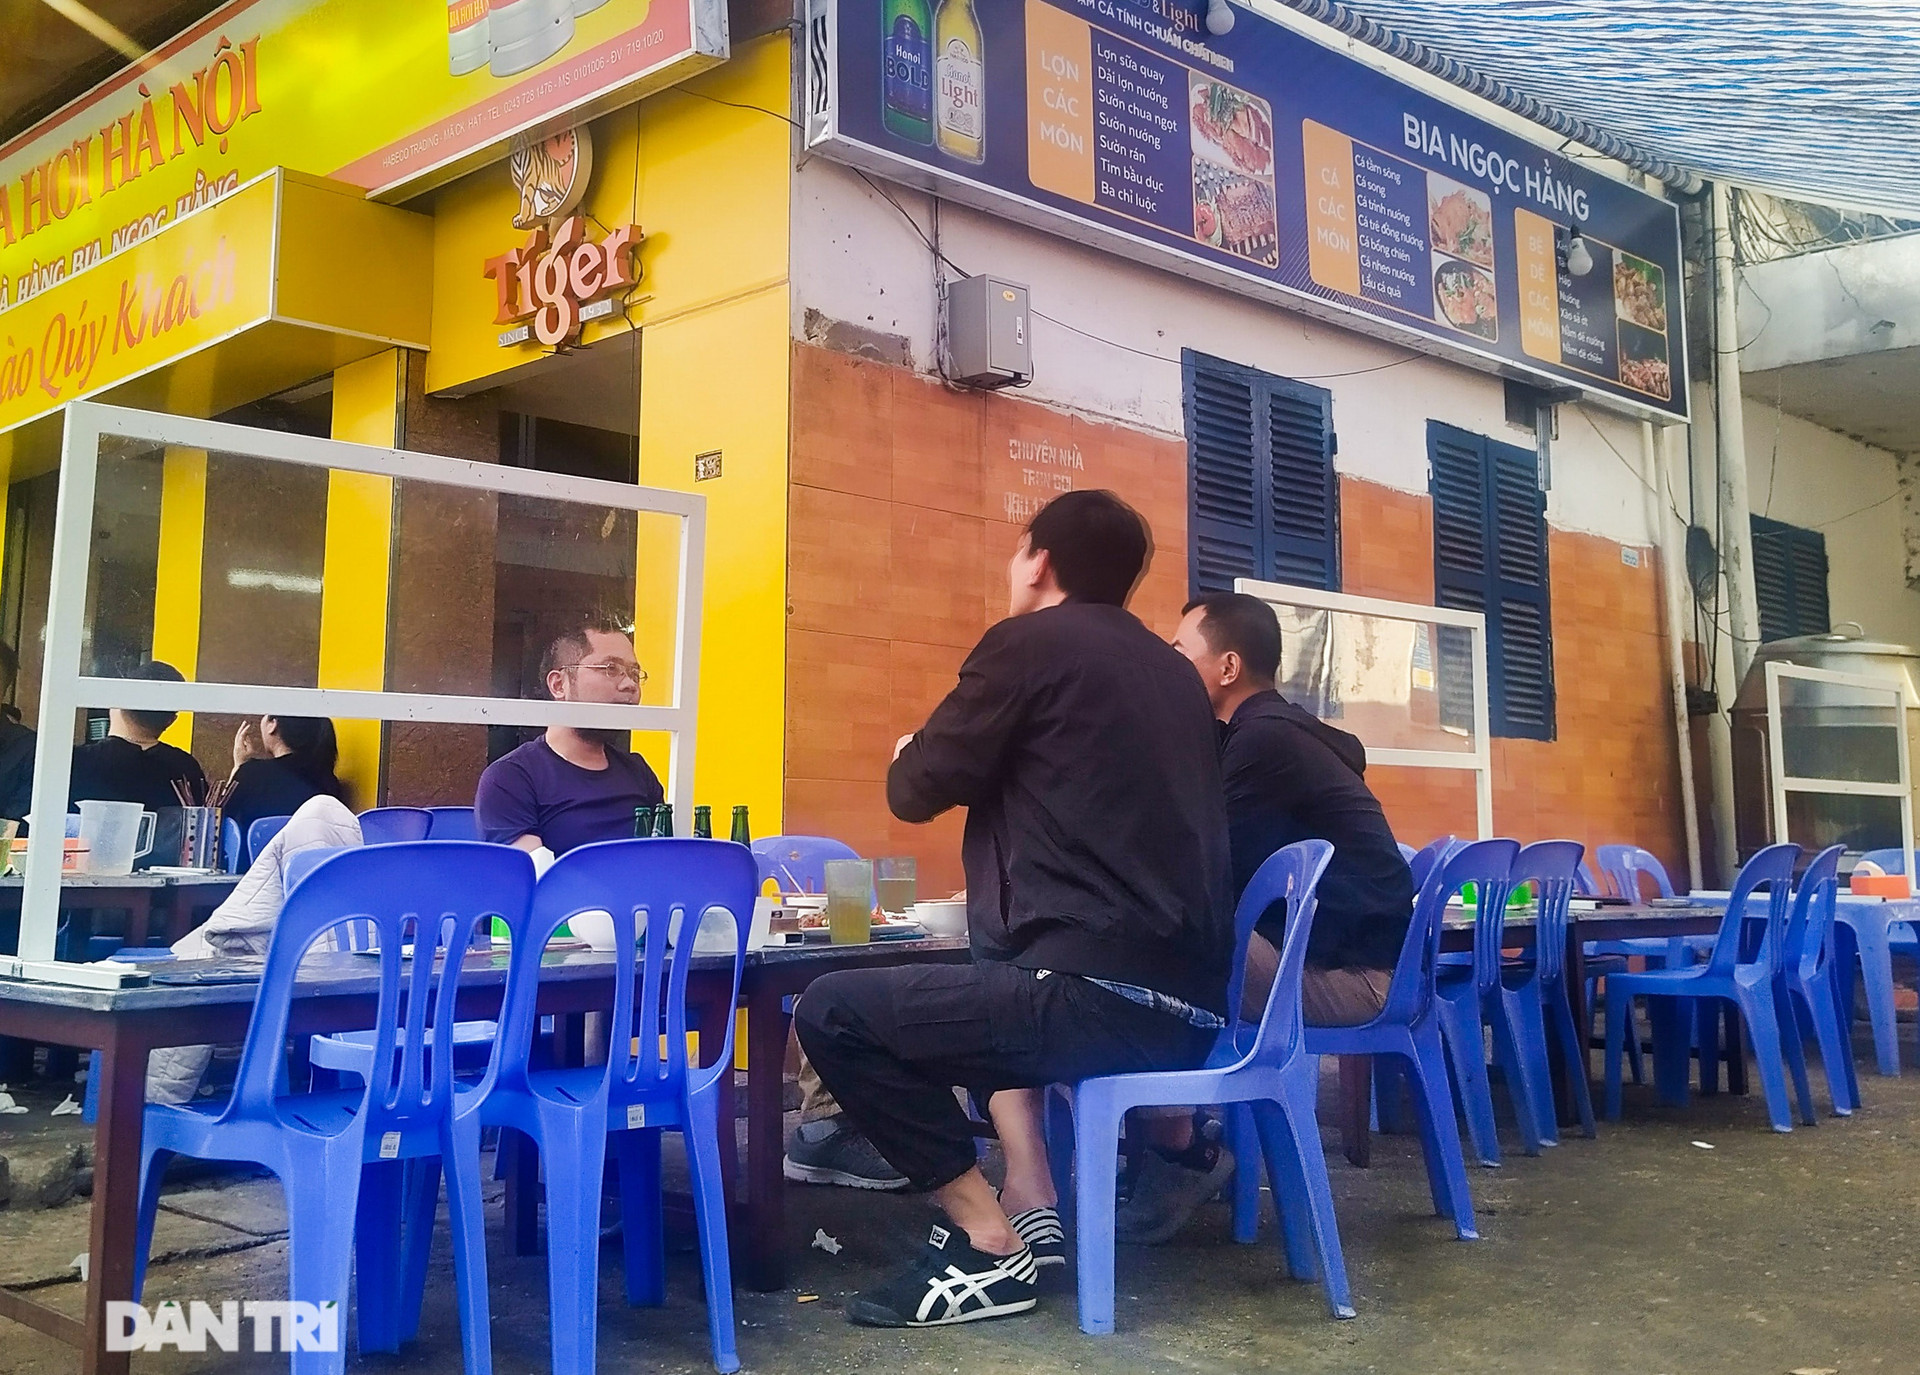 Trước đó, nhiều nhà hàng, quán ăn trên địa bàn Hà Nội cũng đã thực hiện dựng vách ngăn nhằm giãn cách chỗ ngồi cho khách hàng. Việc làm này thể hiện ý thức nghiêm túc thực hiện chỉ đạo giãn cách tại nhà hàng, quán cà phê của thành phố Hà Nội.